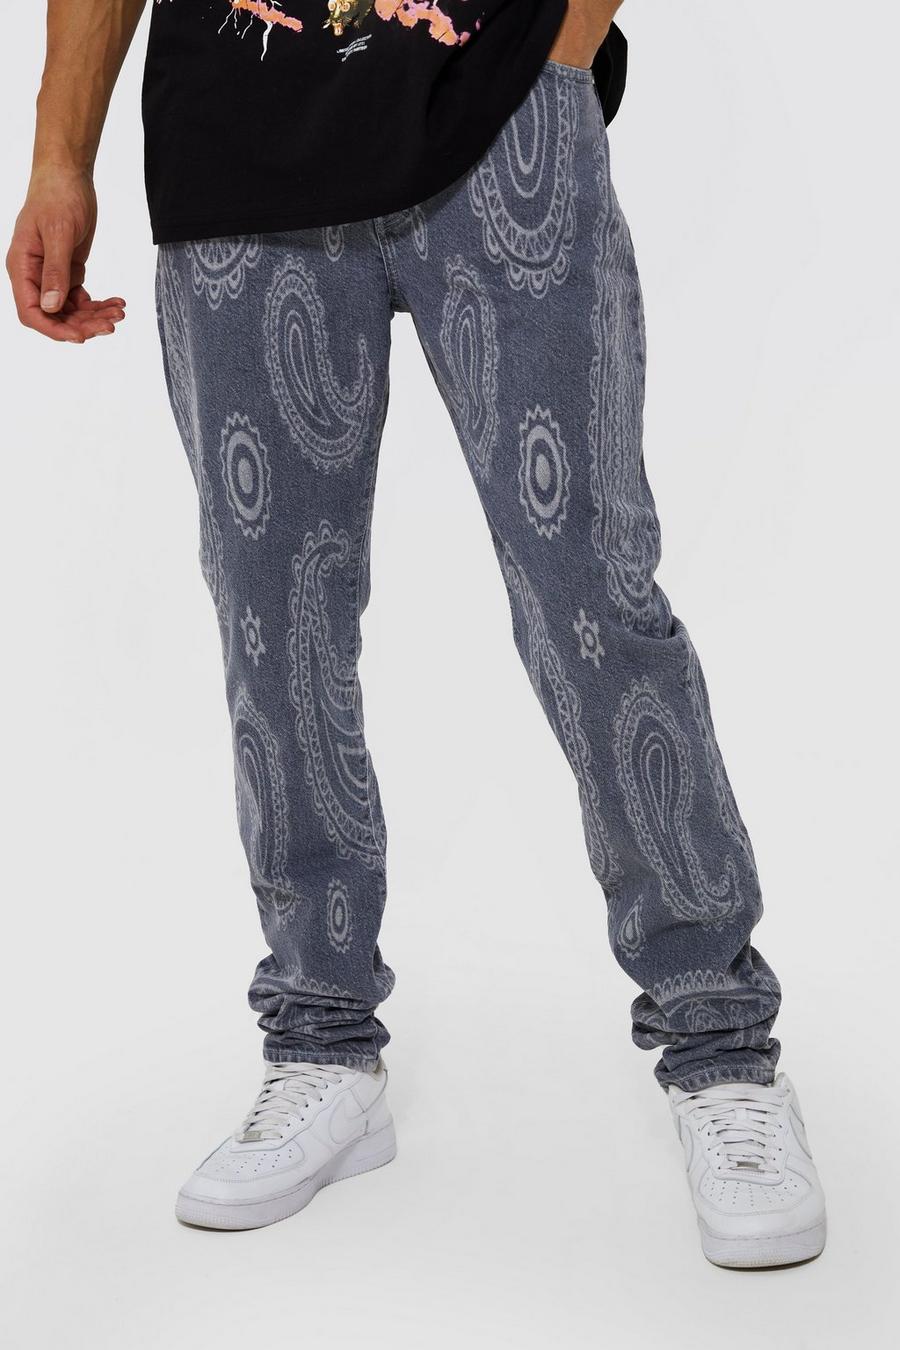 Jeans Tall Slim Fit rigidi in fantasia cachemire con stampa al laser, Light grey grigio